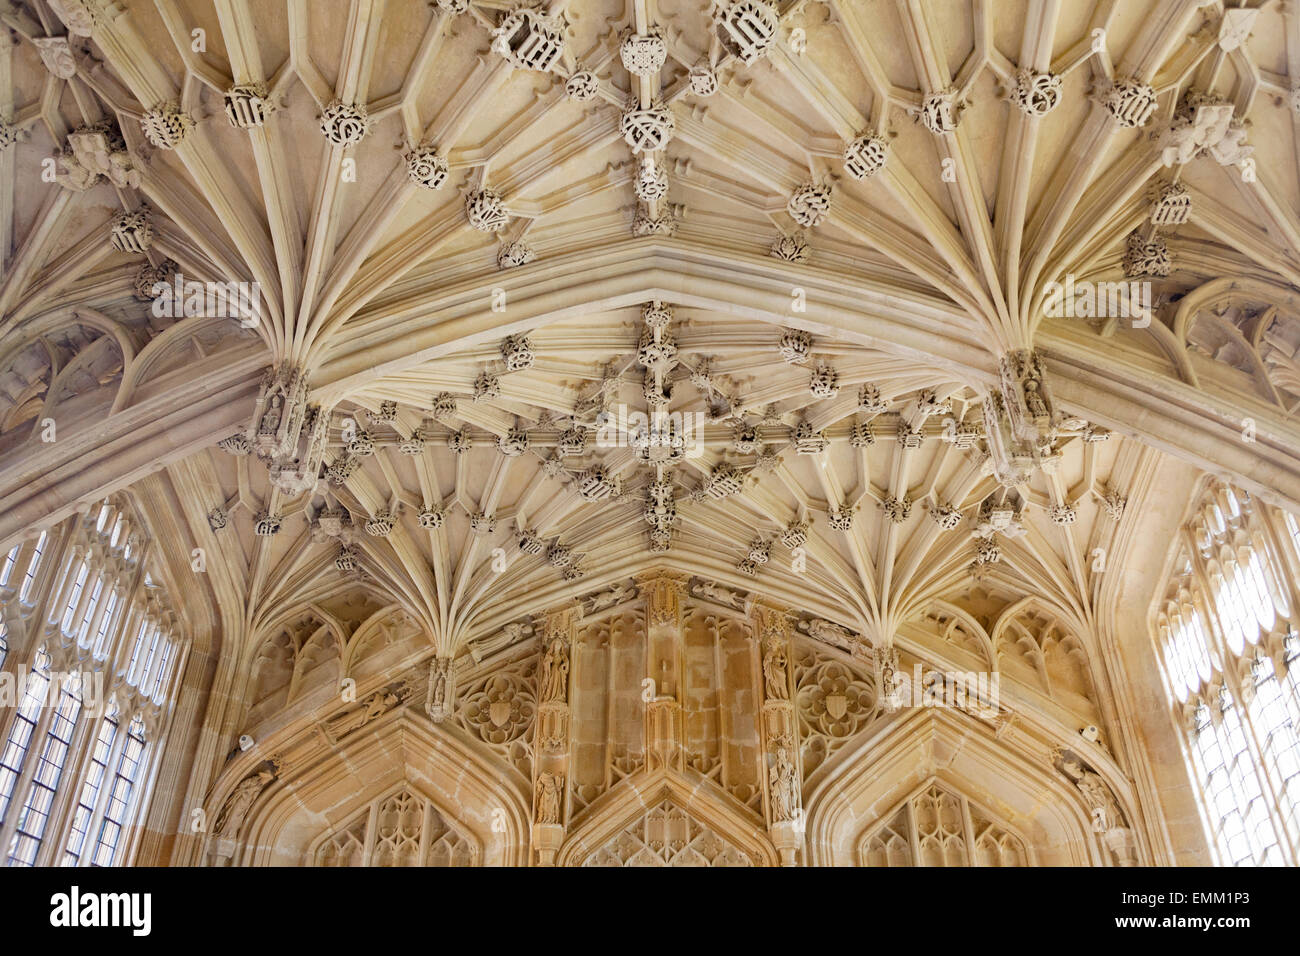 [Et] l'arc gothique [cso] conception de ventilateur de plafond, 'Divinity School', [Bodleian Library], Oxford, England, UK Banque D'Images